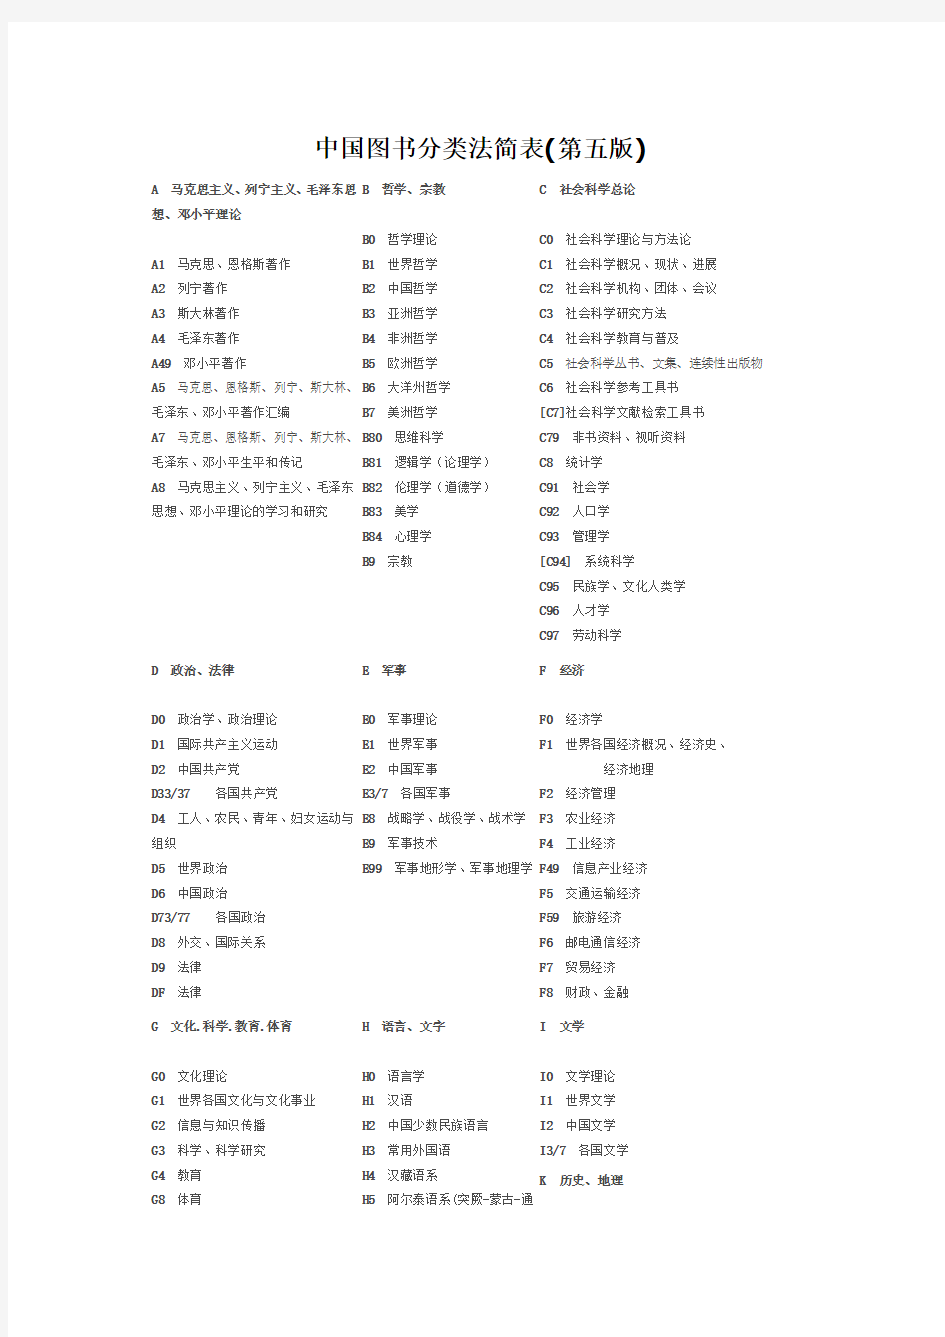 中国图书分类法简表第五版